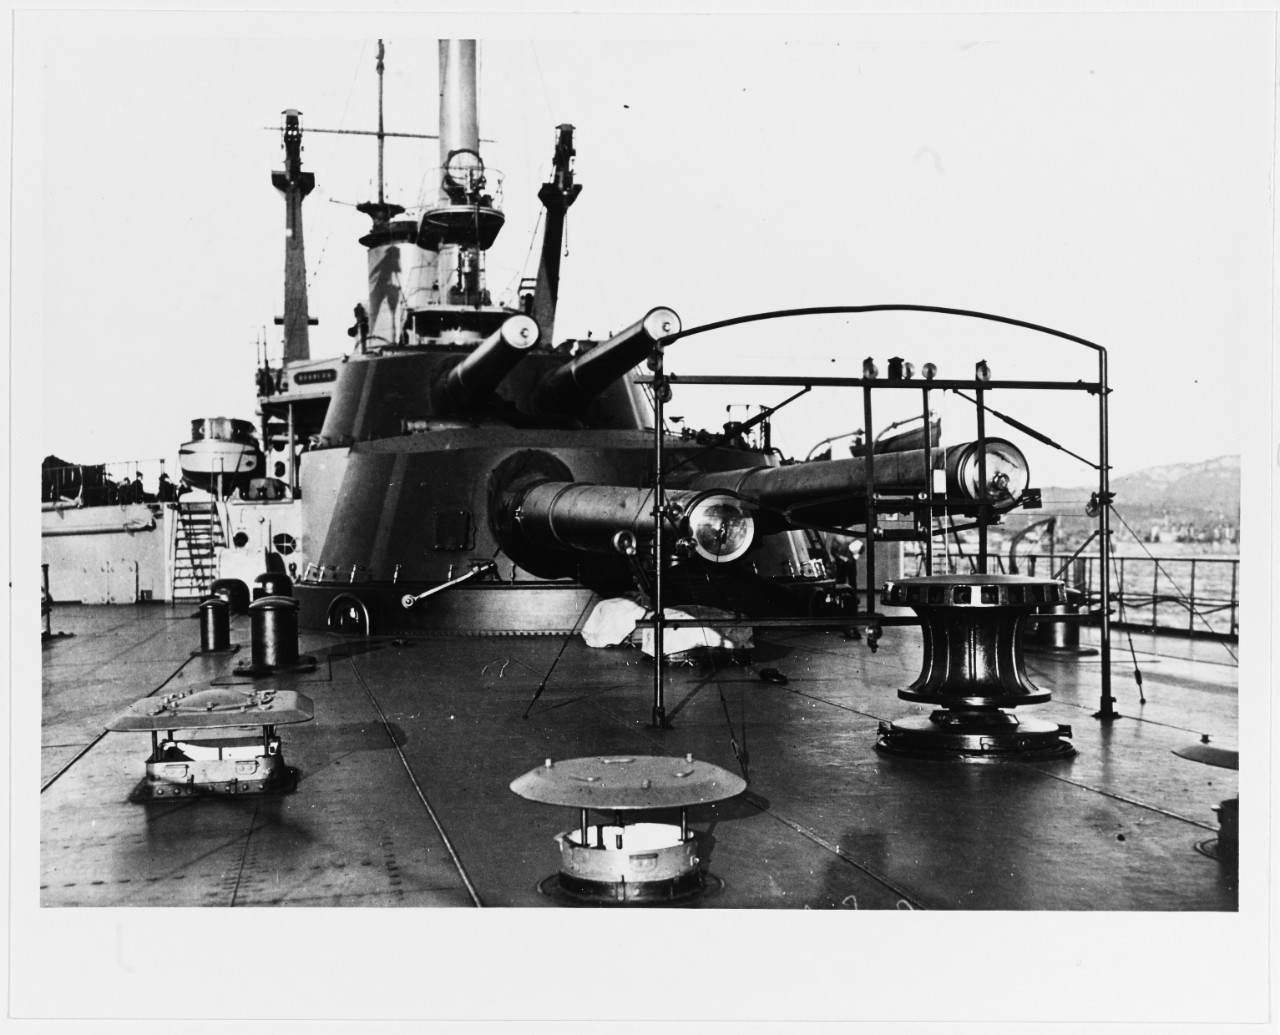 BRETAGNE (French battleship, 1913-1940)